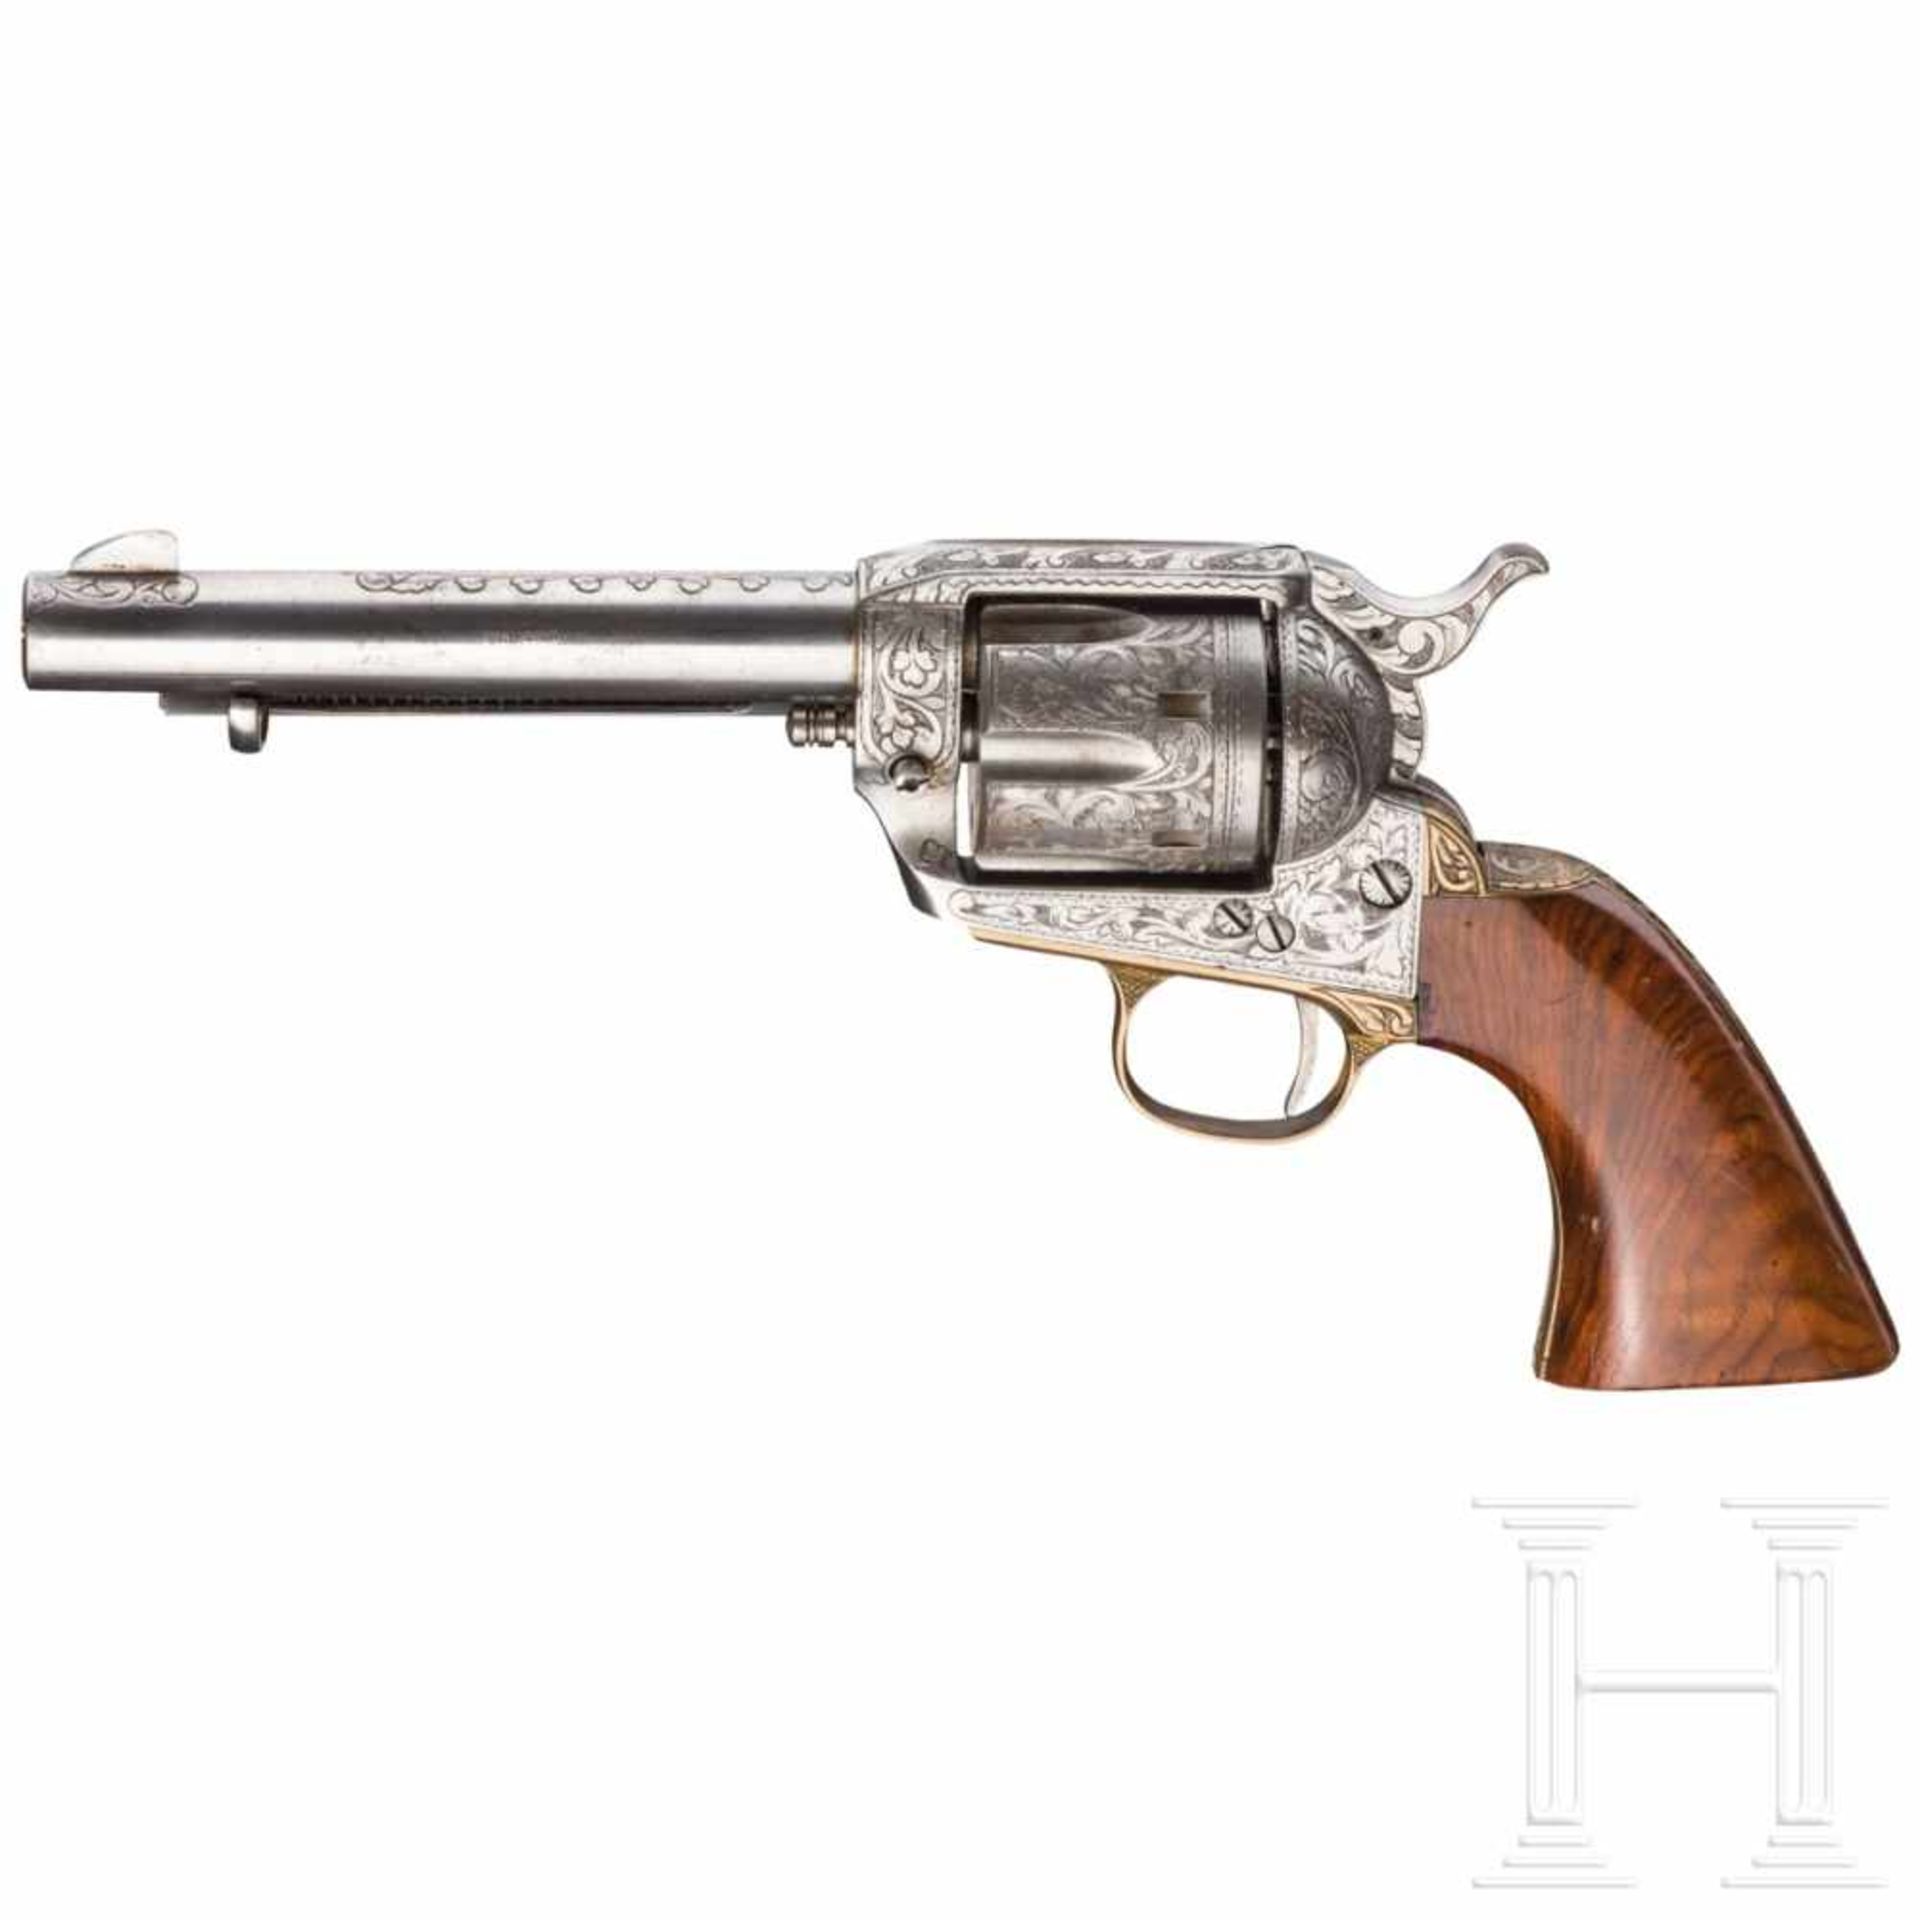 Colt SAA 1873, Armi Jäger, graviertKal. 4 mm M 20, Nr. 43718. Blanker Lauf, Länge 5-1/2".